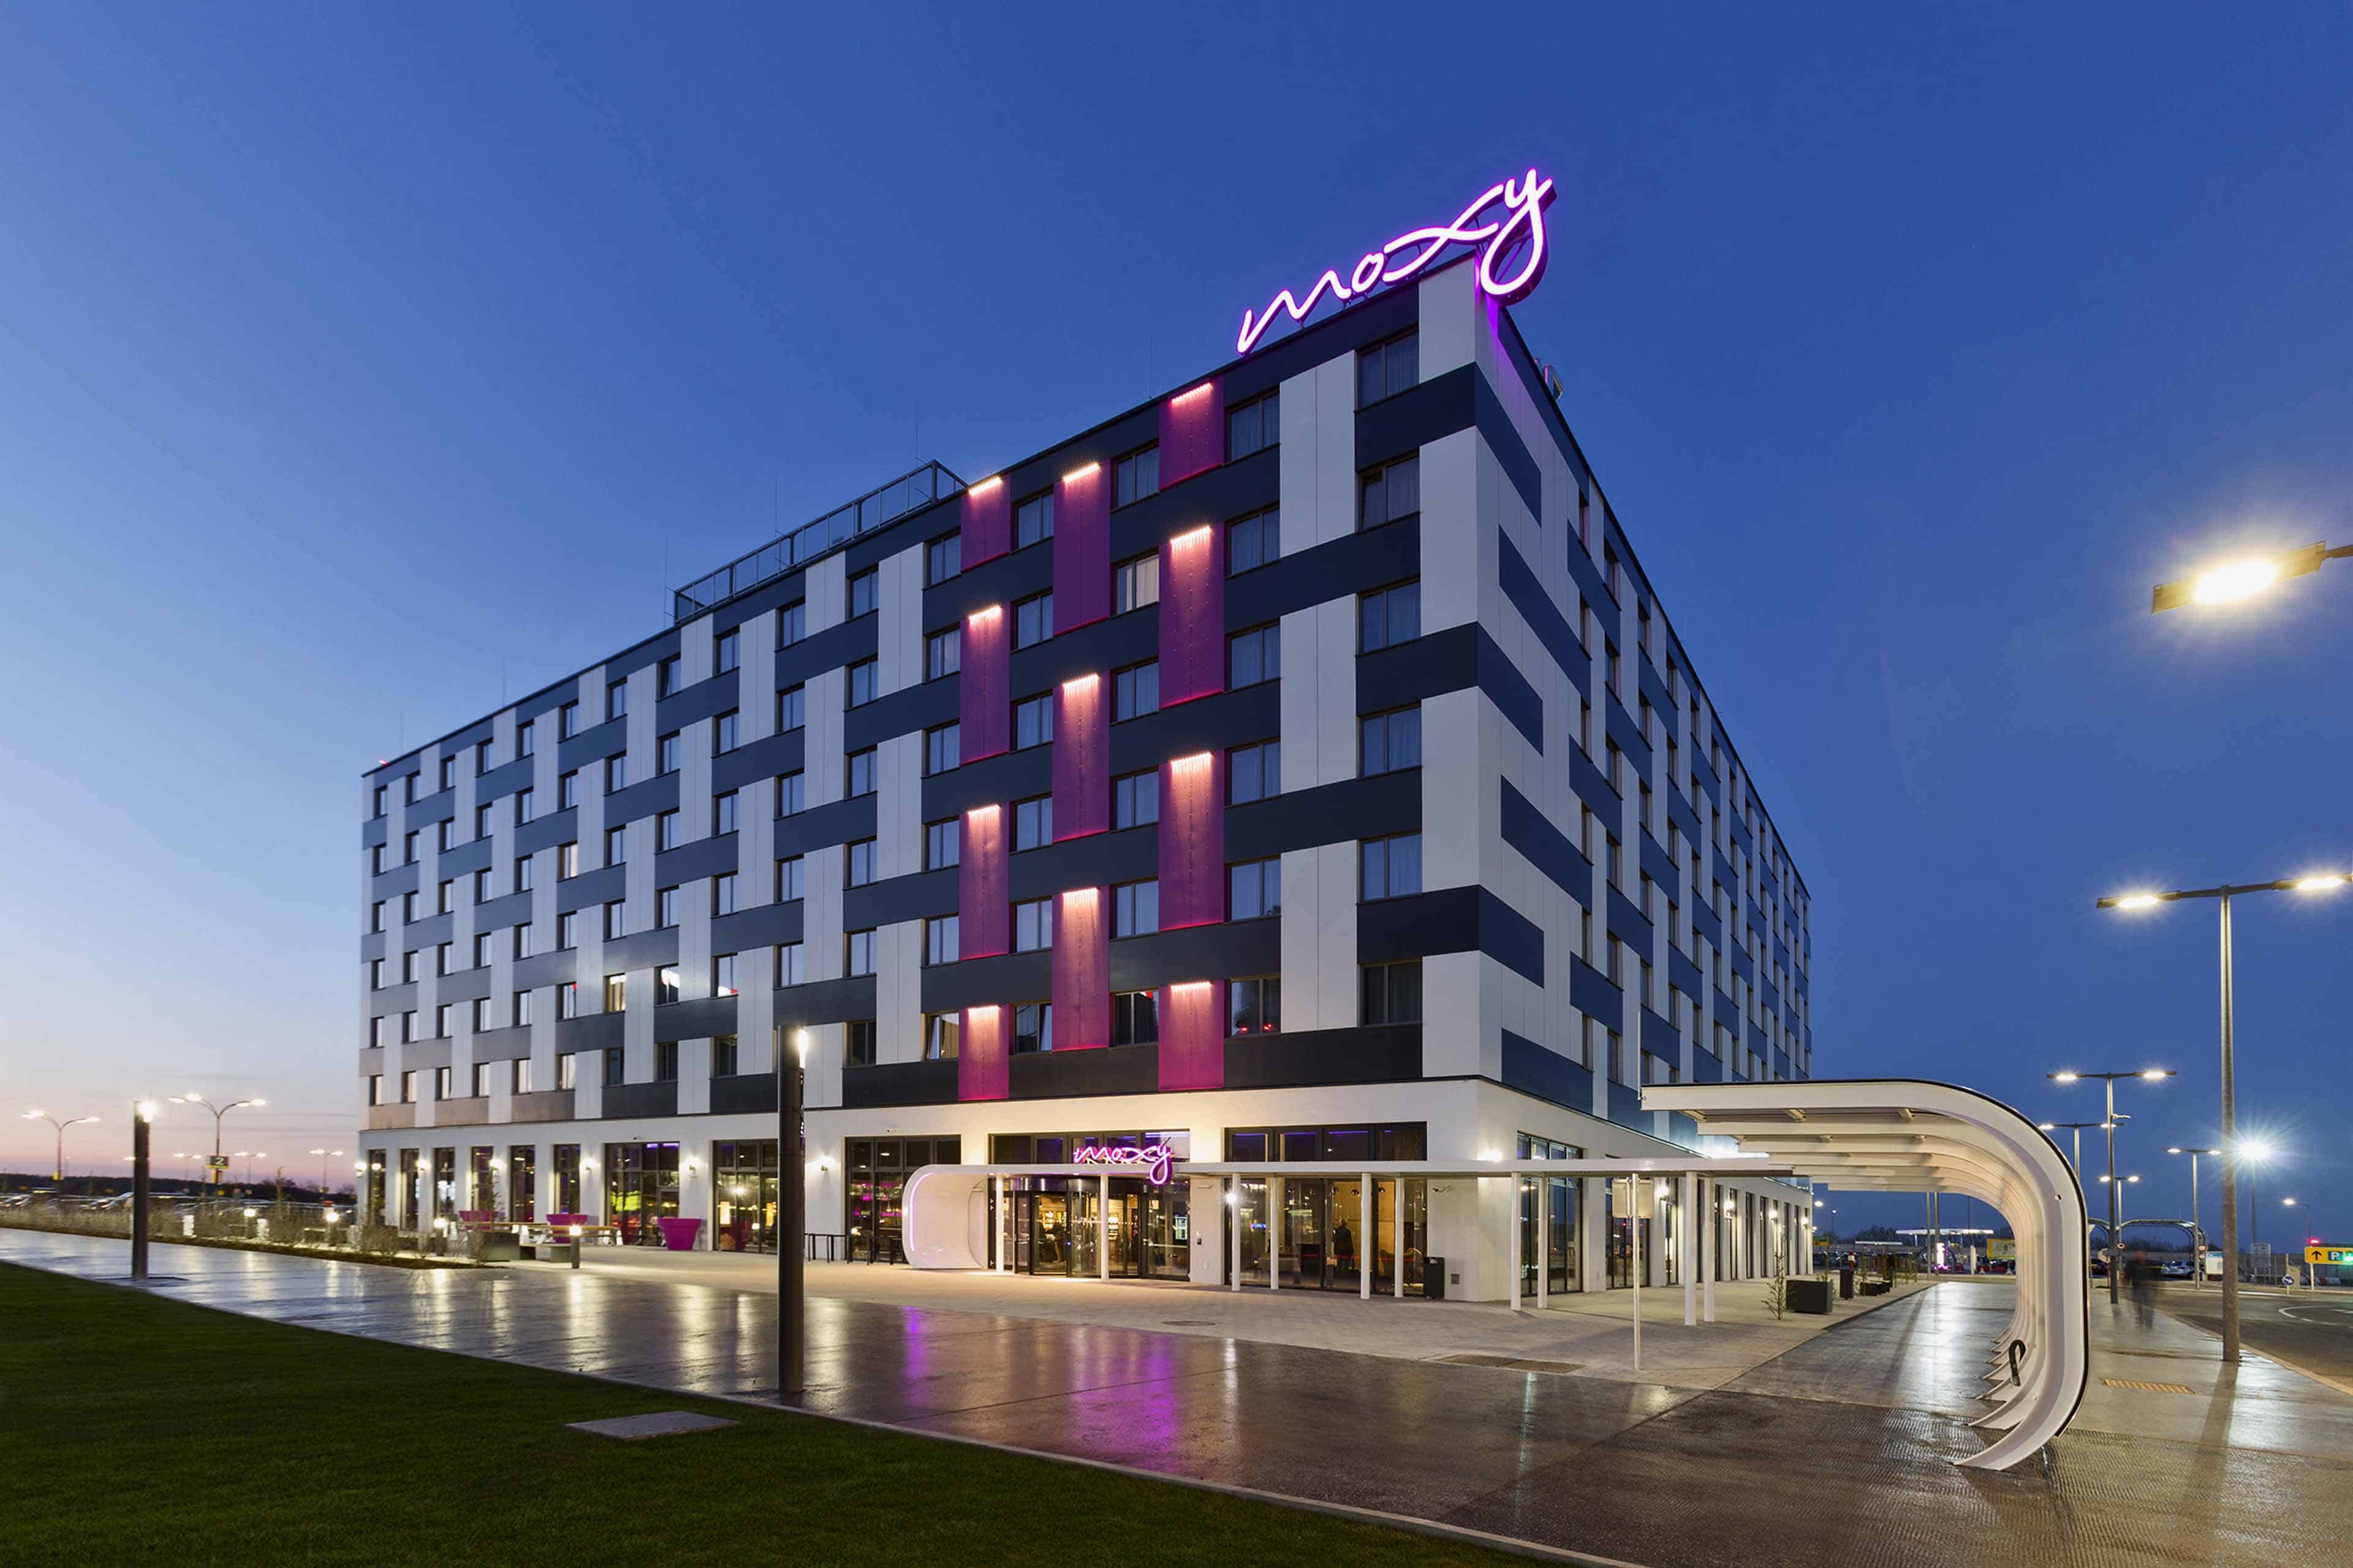 Avaya implementa experiencias únicas para huéspedes de los principales hoteles del mundo